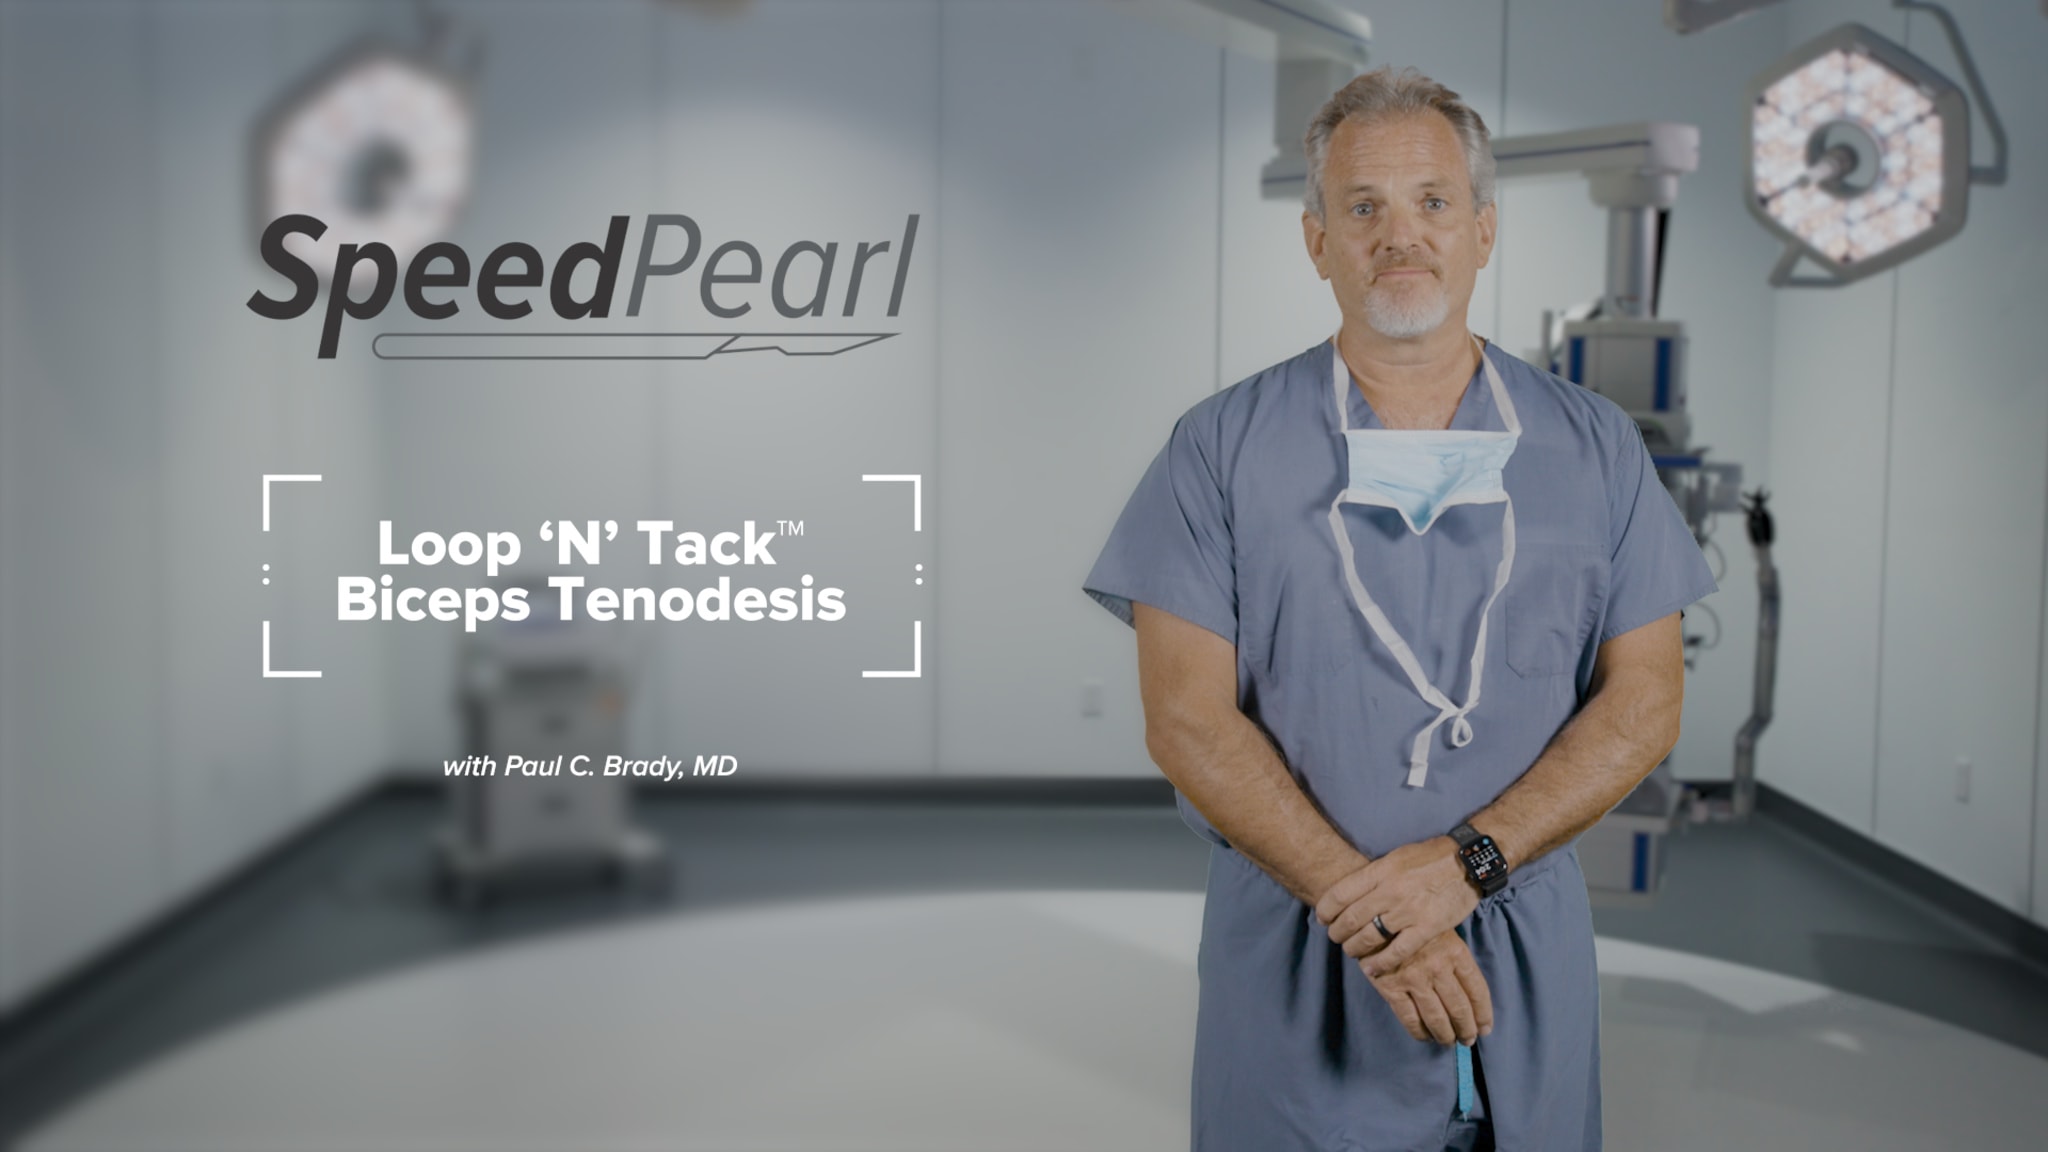 SpeedPearl: Loop 'N' Tack™ Biceps Tenodesis